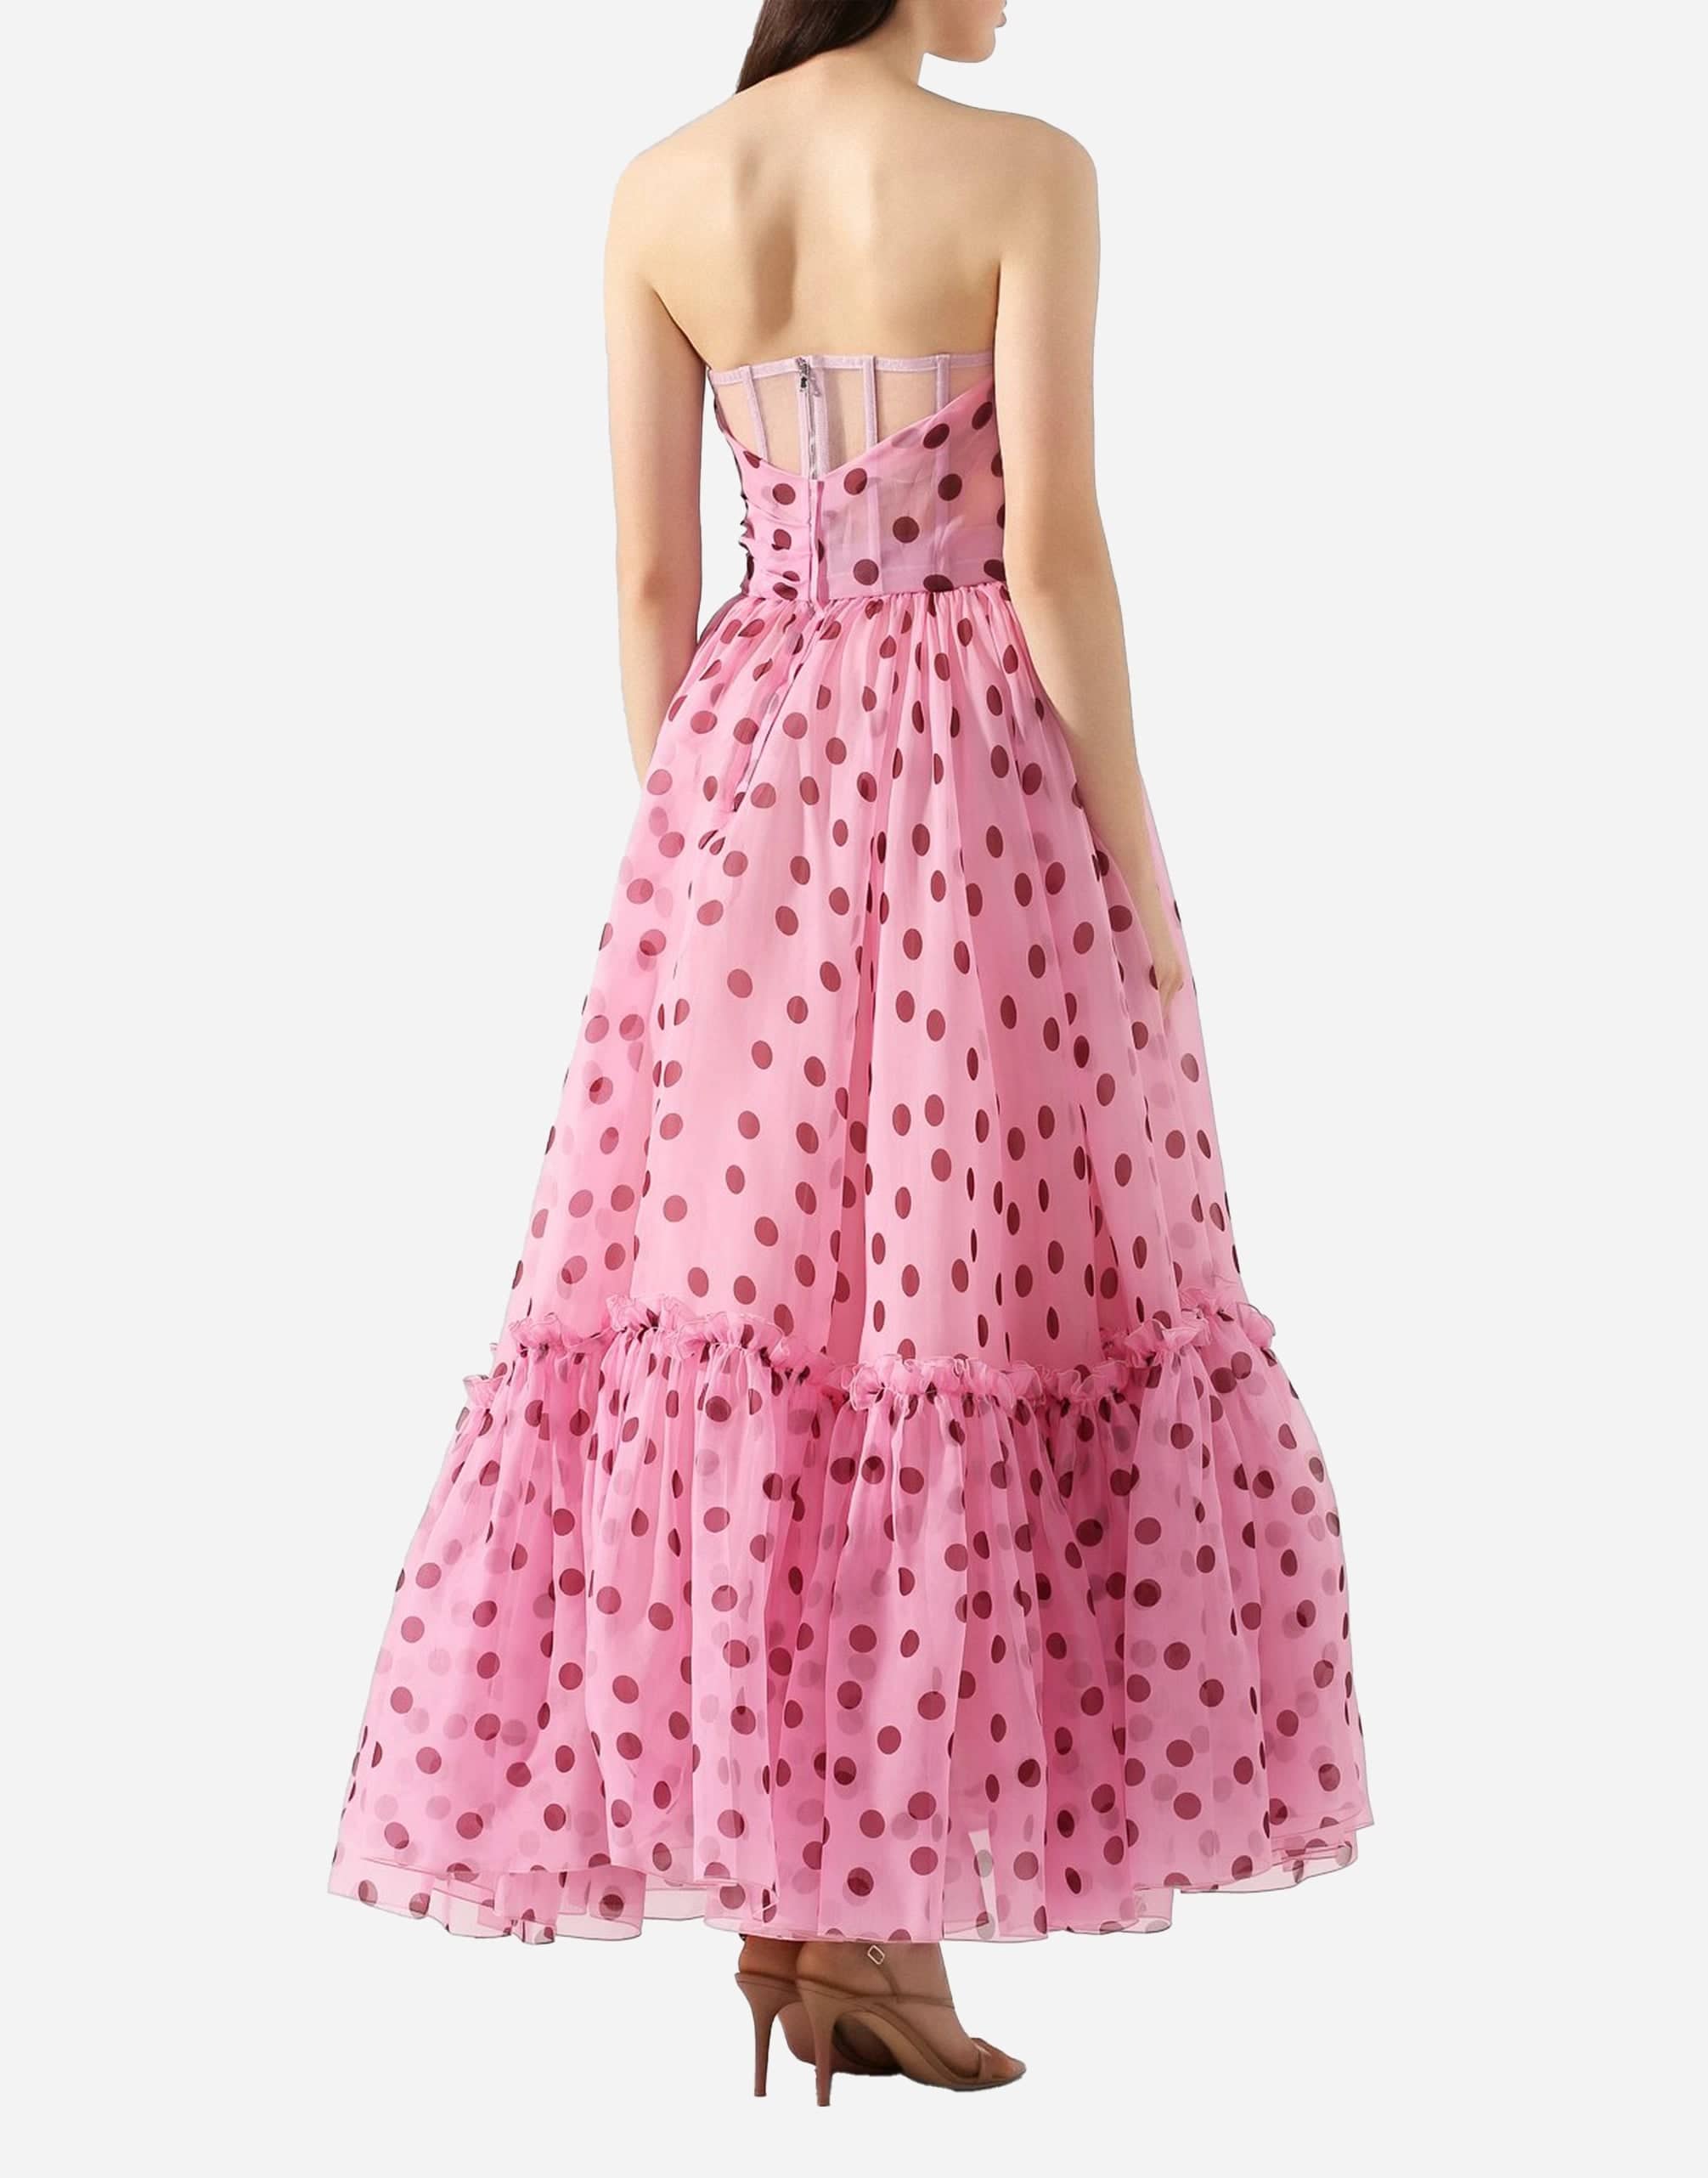 Dolce & Gabbana Strapless Polka Dot Organza Dress